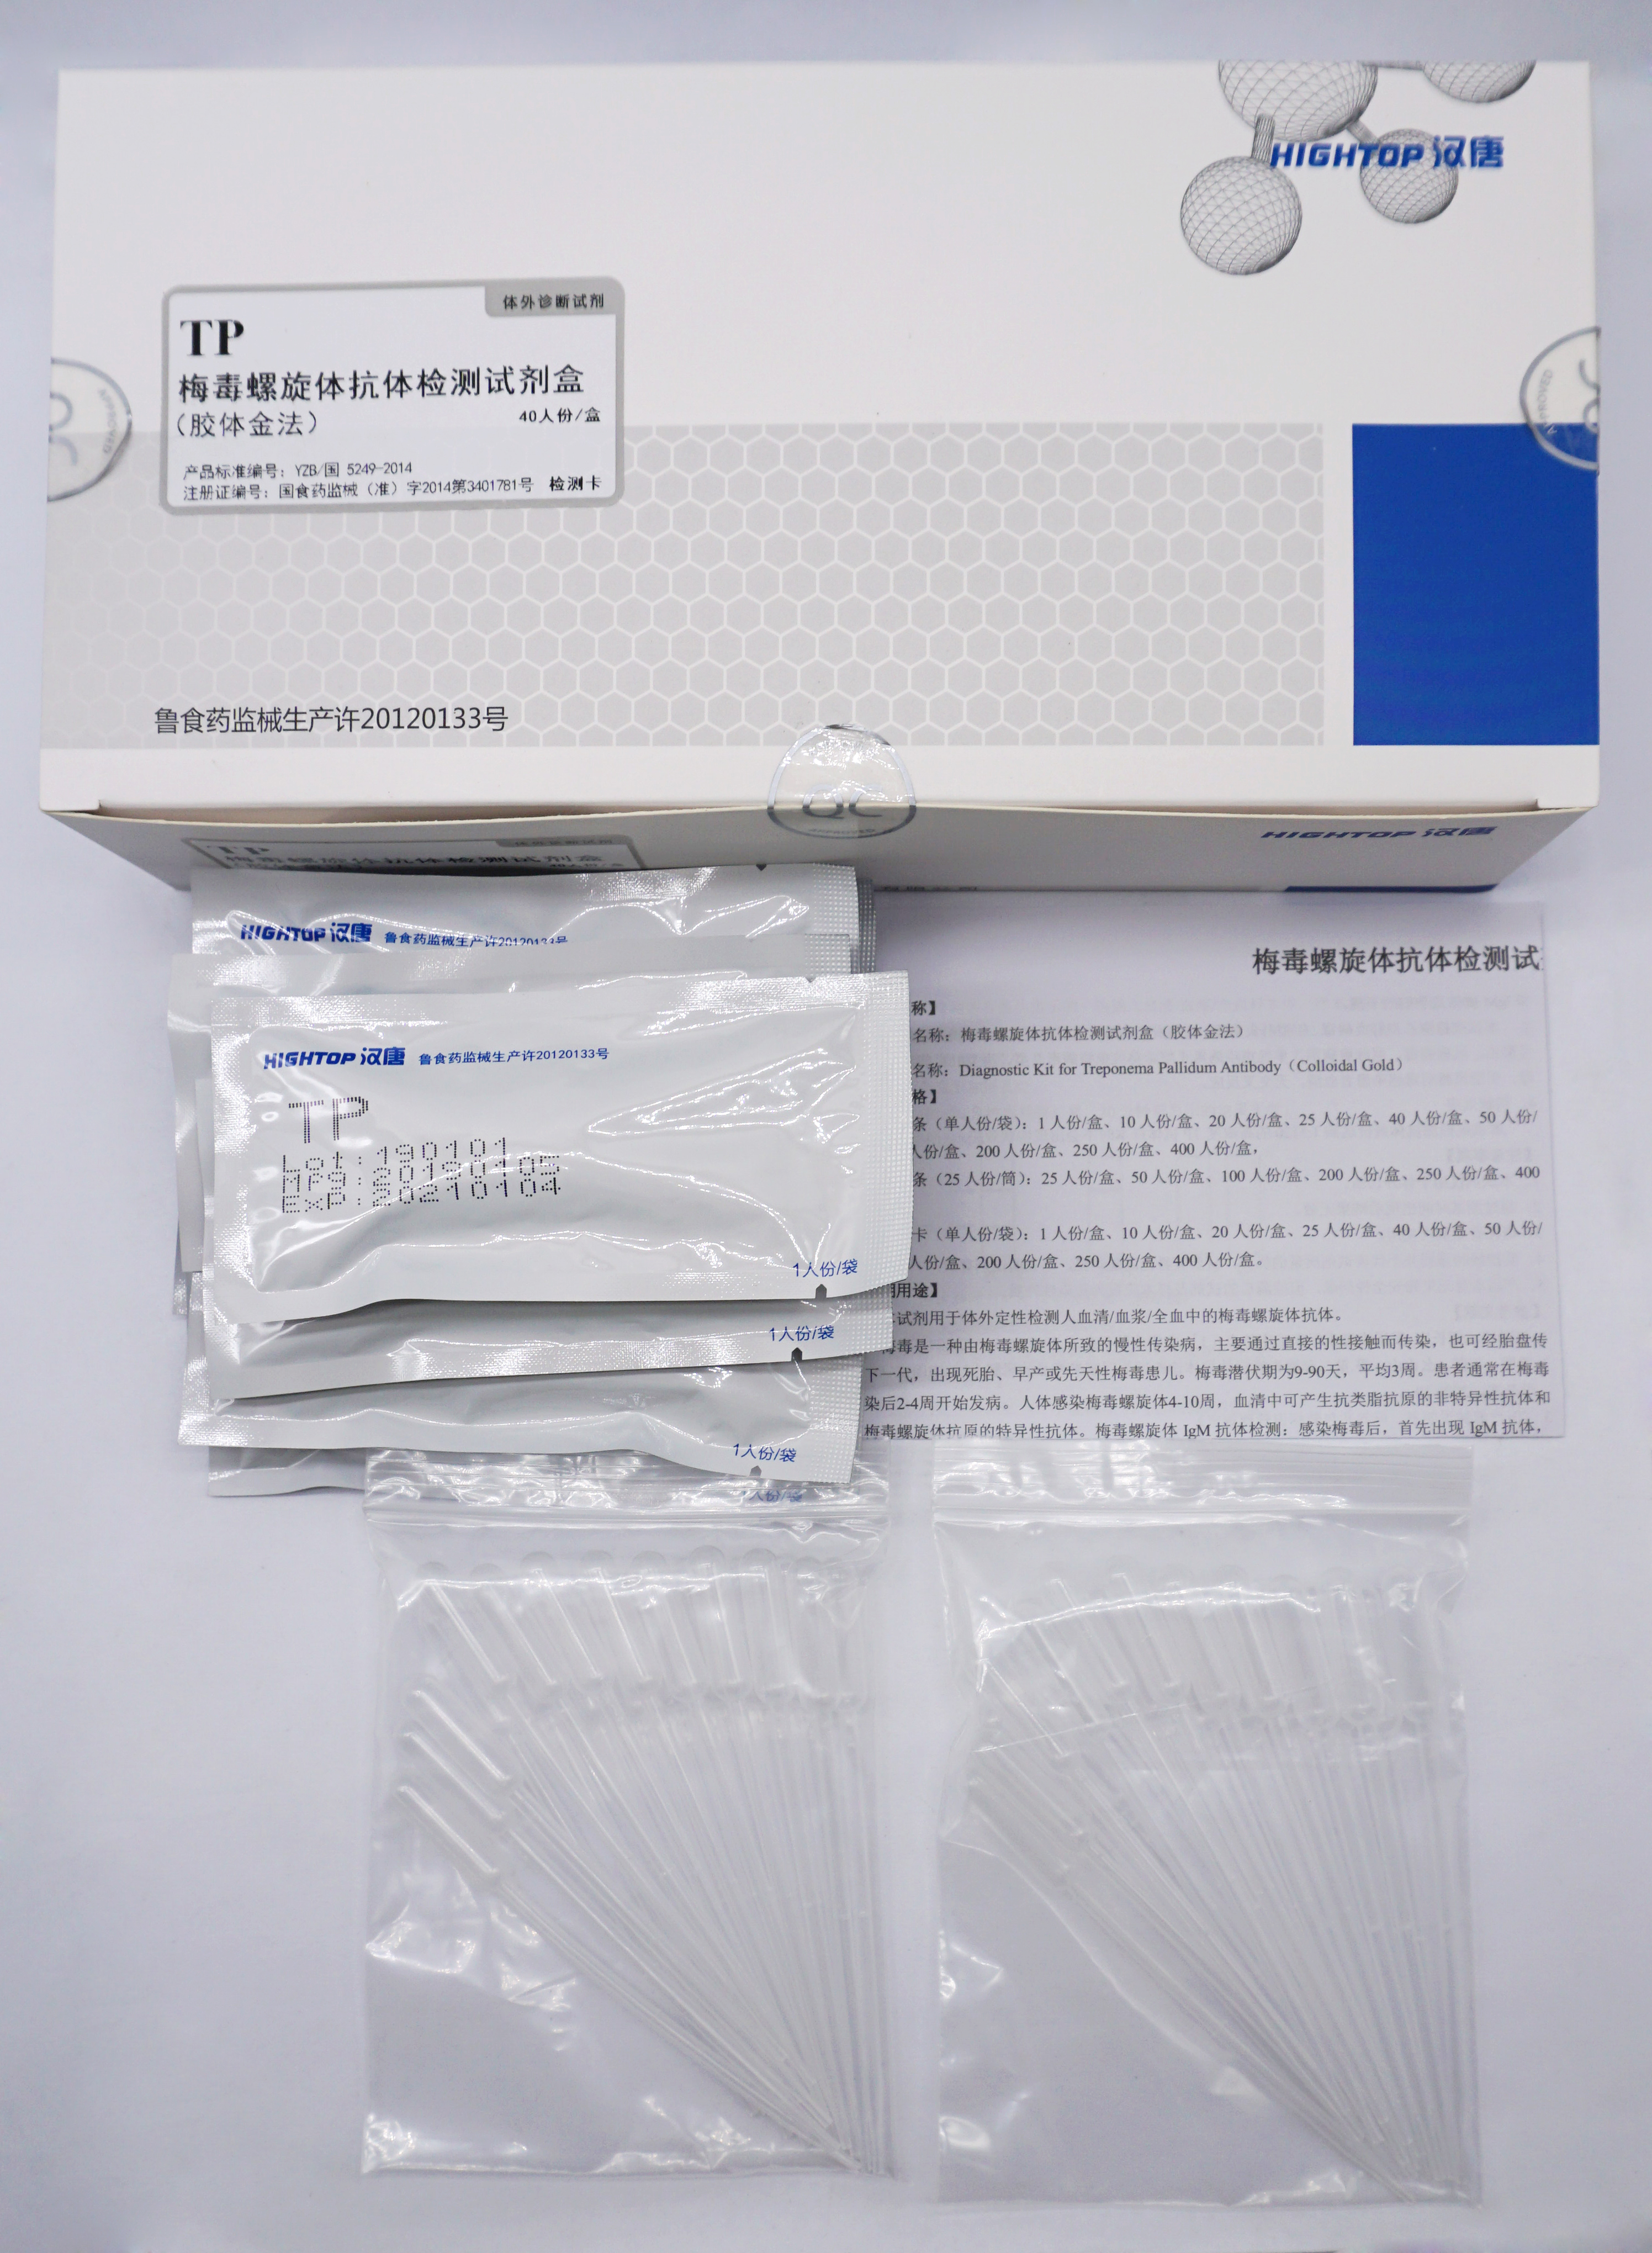 【康华】梅毒螺旋体抗体检测试剂盒(胶体金法)